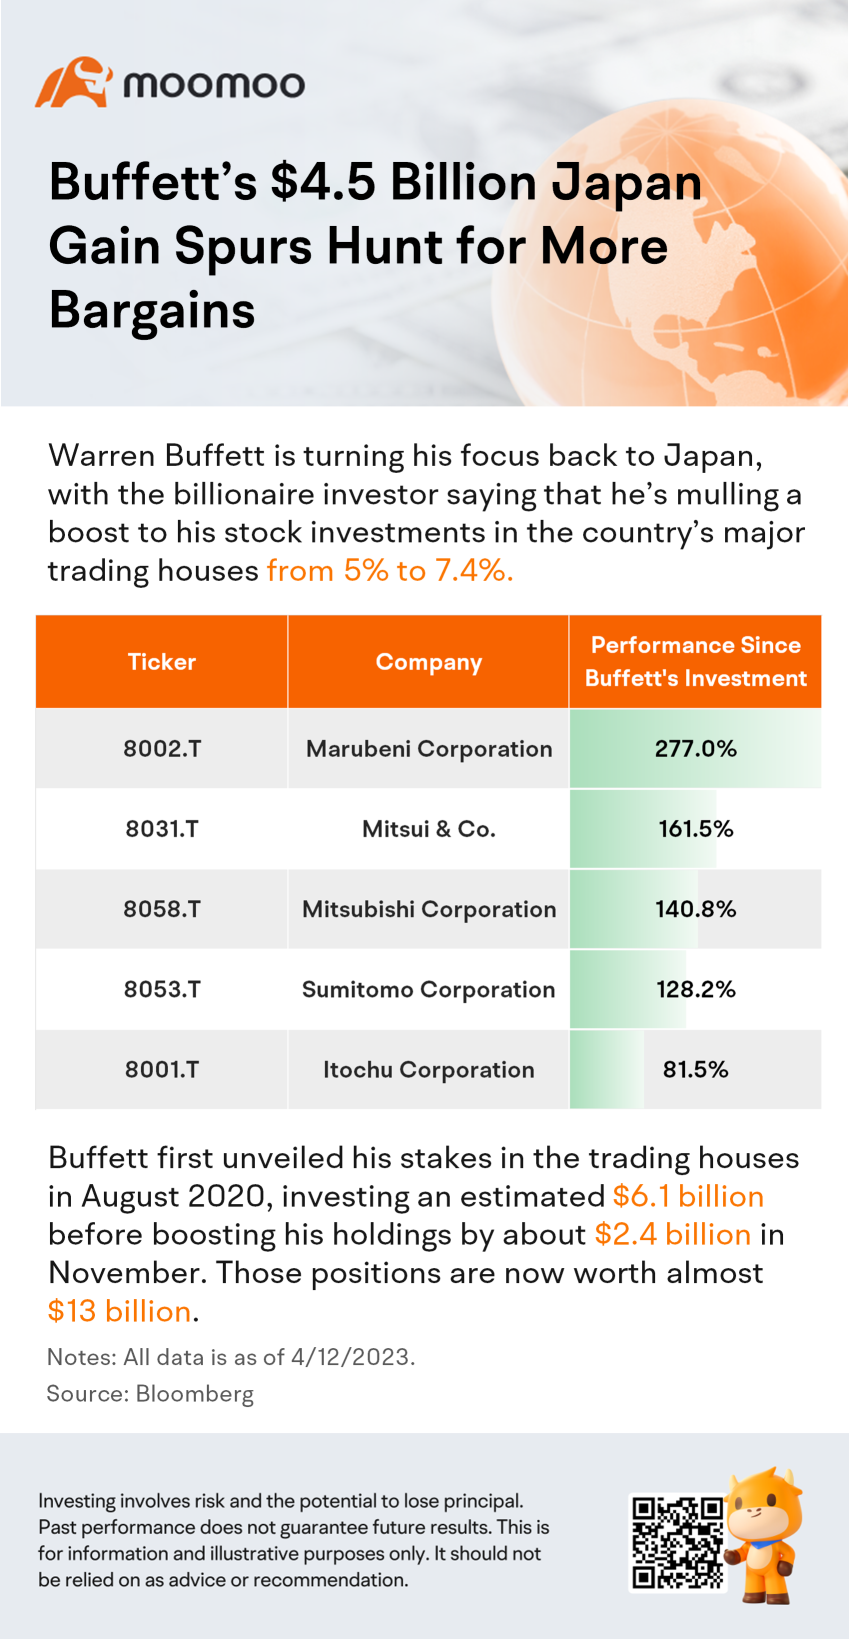 Buffett's $4.5 Billion Japan Gain Spurs Hunt for More Bargains